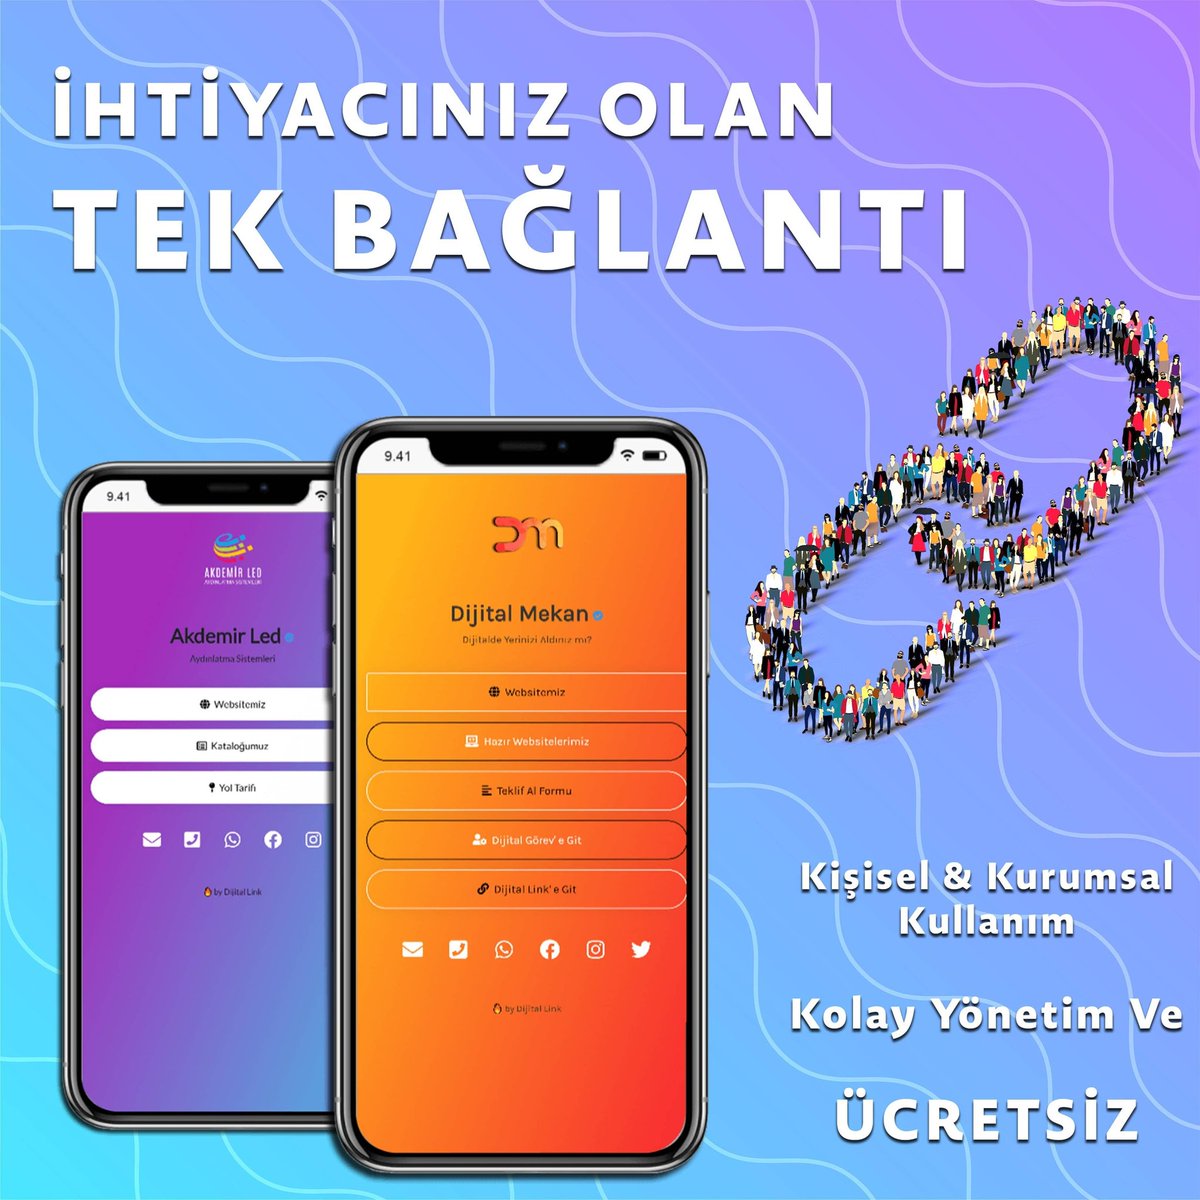 İhtiyacınız olan tek bağlantı ve o bağlantıda tüm iletişim bilgileriniz ve sosyal medya hesaplarınız 🔥

#istanbul #ankara #izmir #antalya #bursa 
Kullanım Detayları İçin Tıkla Hemen Ücretsiz Başla 💫 Ömür Boyu Ücretsiz